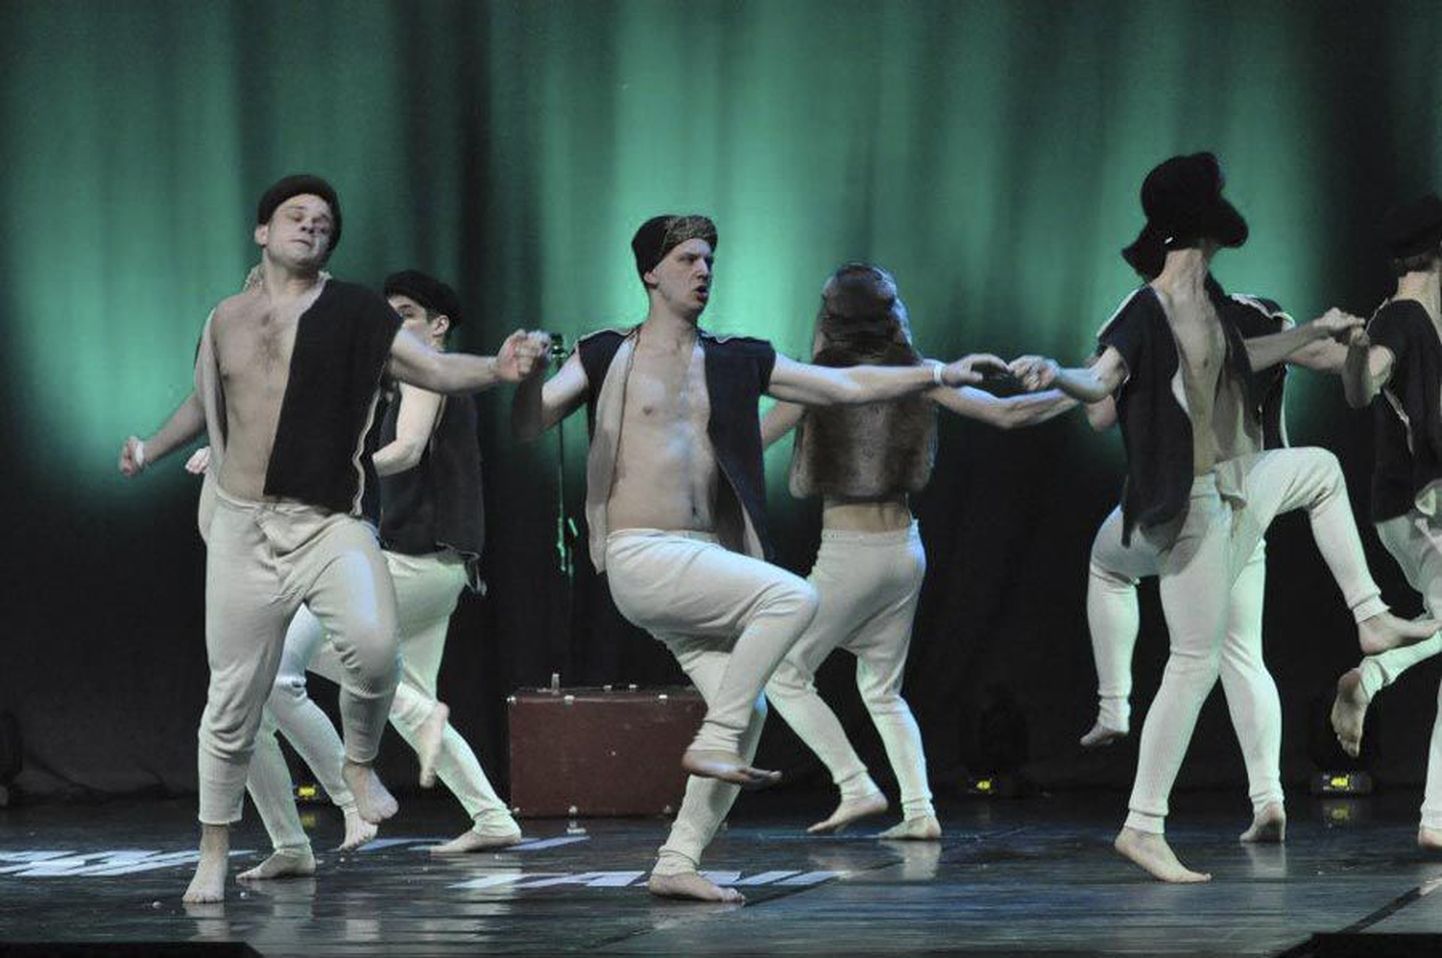 Lavastuse menukaim tants on «Paruni püksid», mis saavutas «Koolitantsu» finaalis oma kategoorias sisuliselt teise koha.